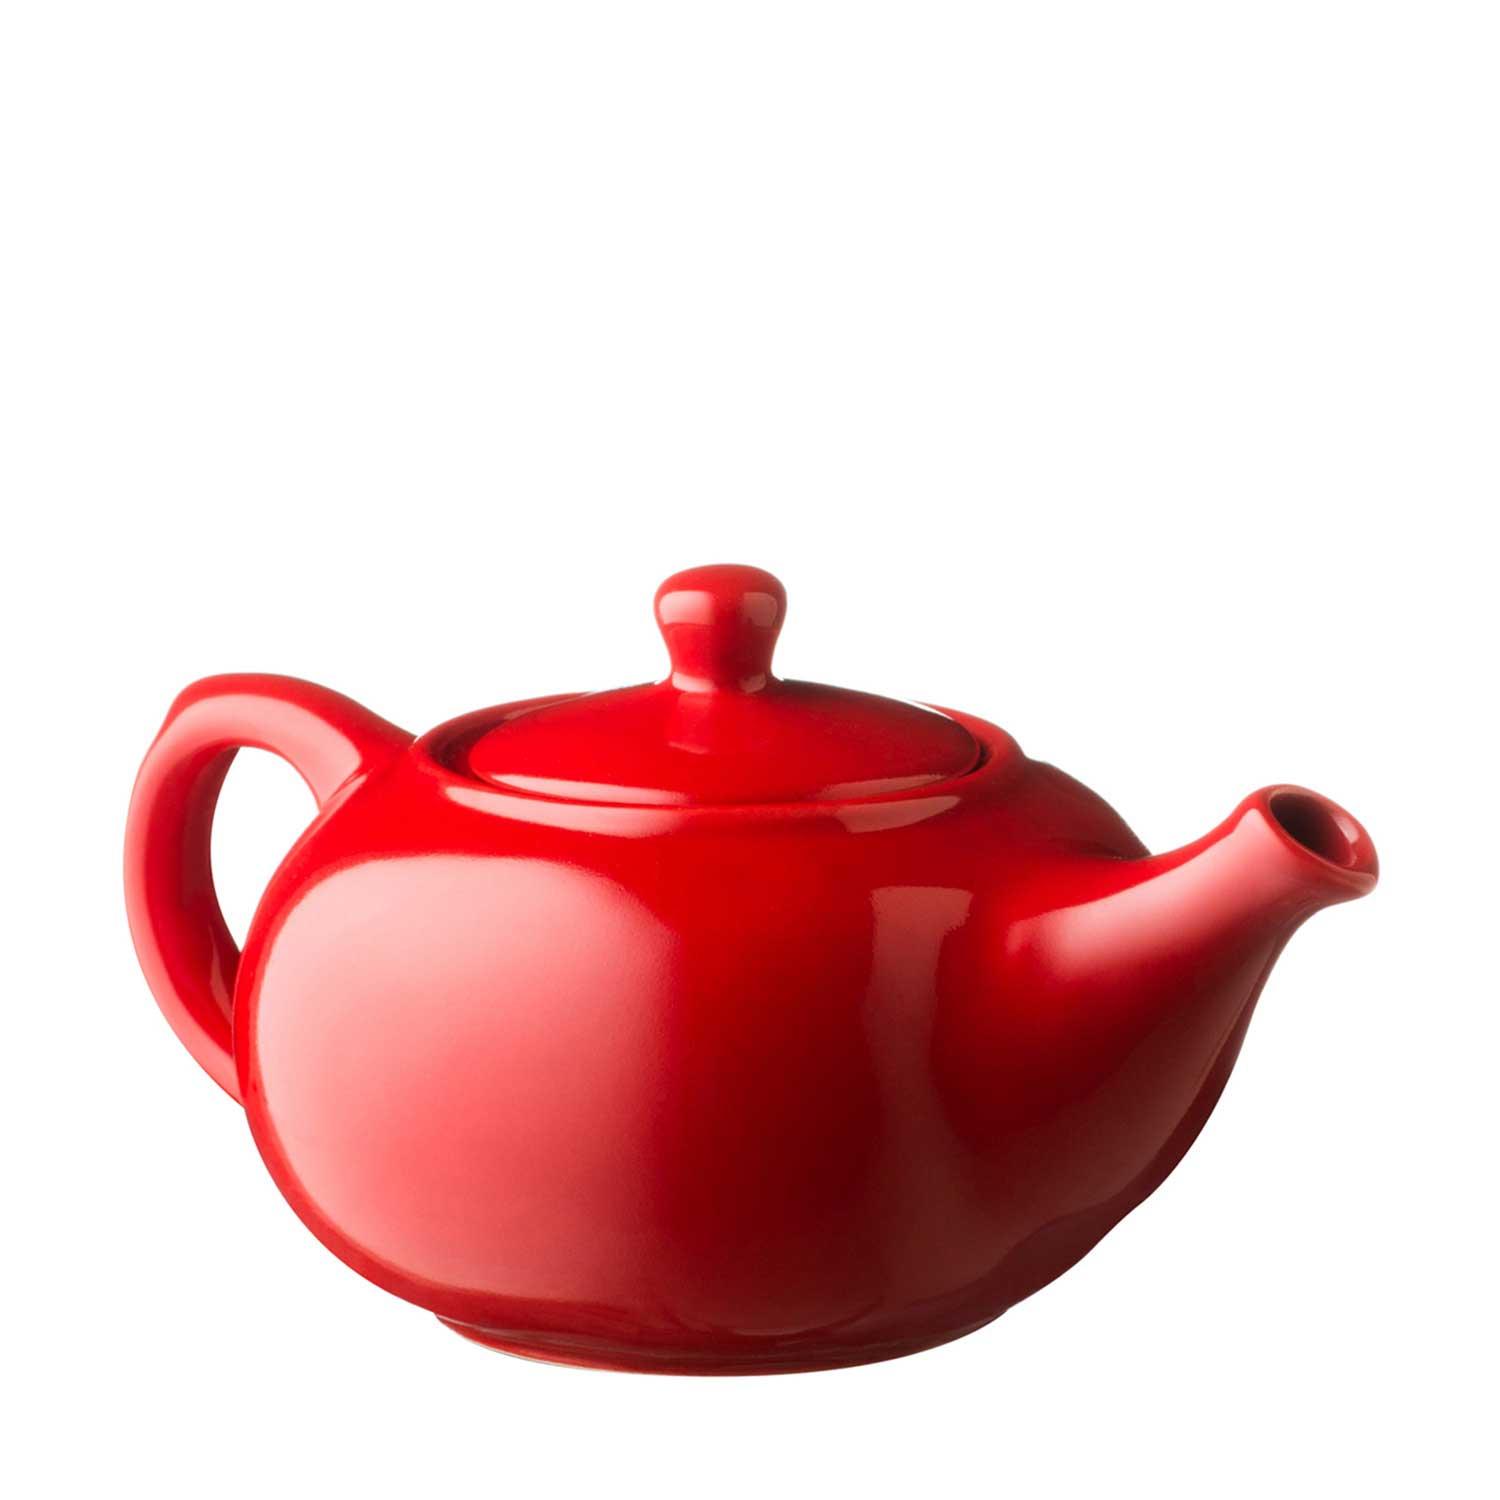 Tea Pot  Ferrari Red Gloss Jenggala Keramik  Bali  Ceramic